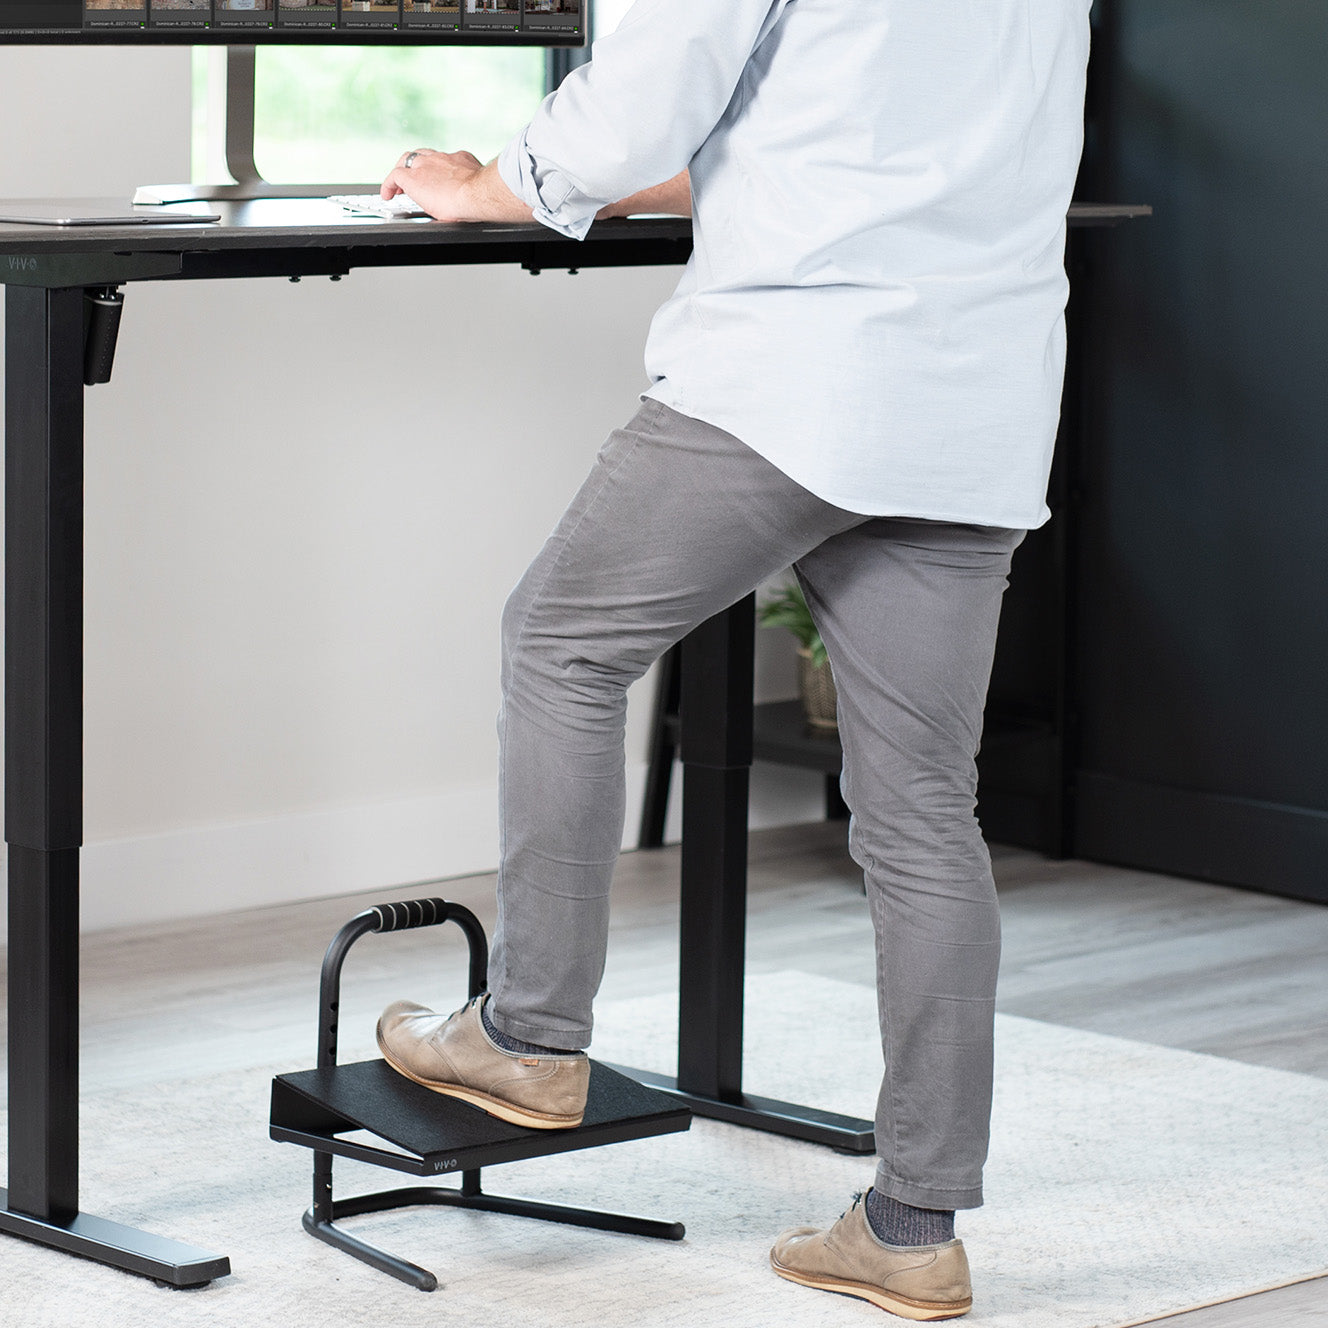 Ergonomic under the desk footrest for sitting or standing desks.